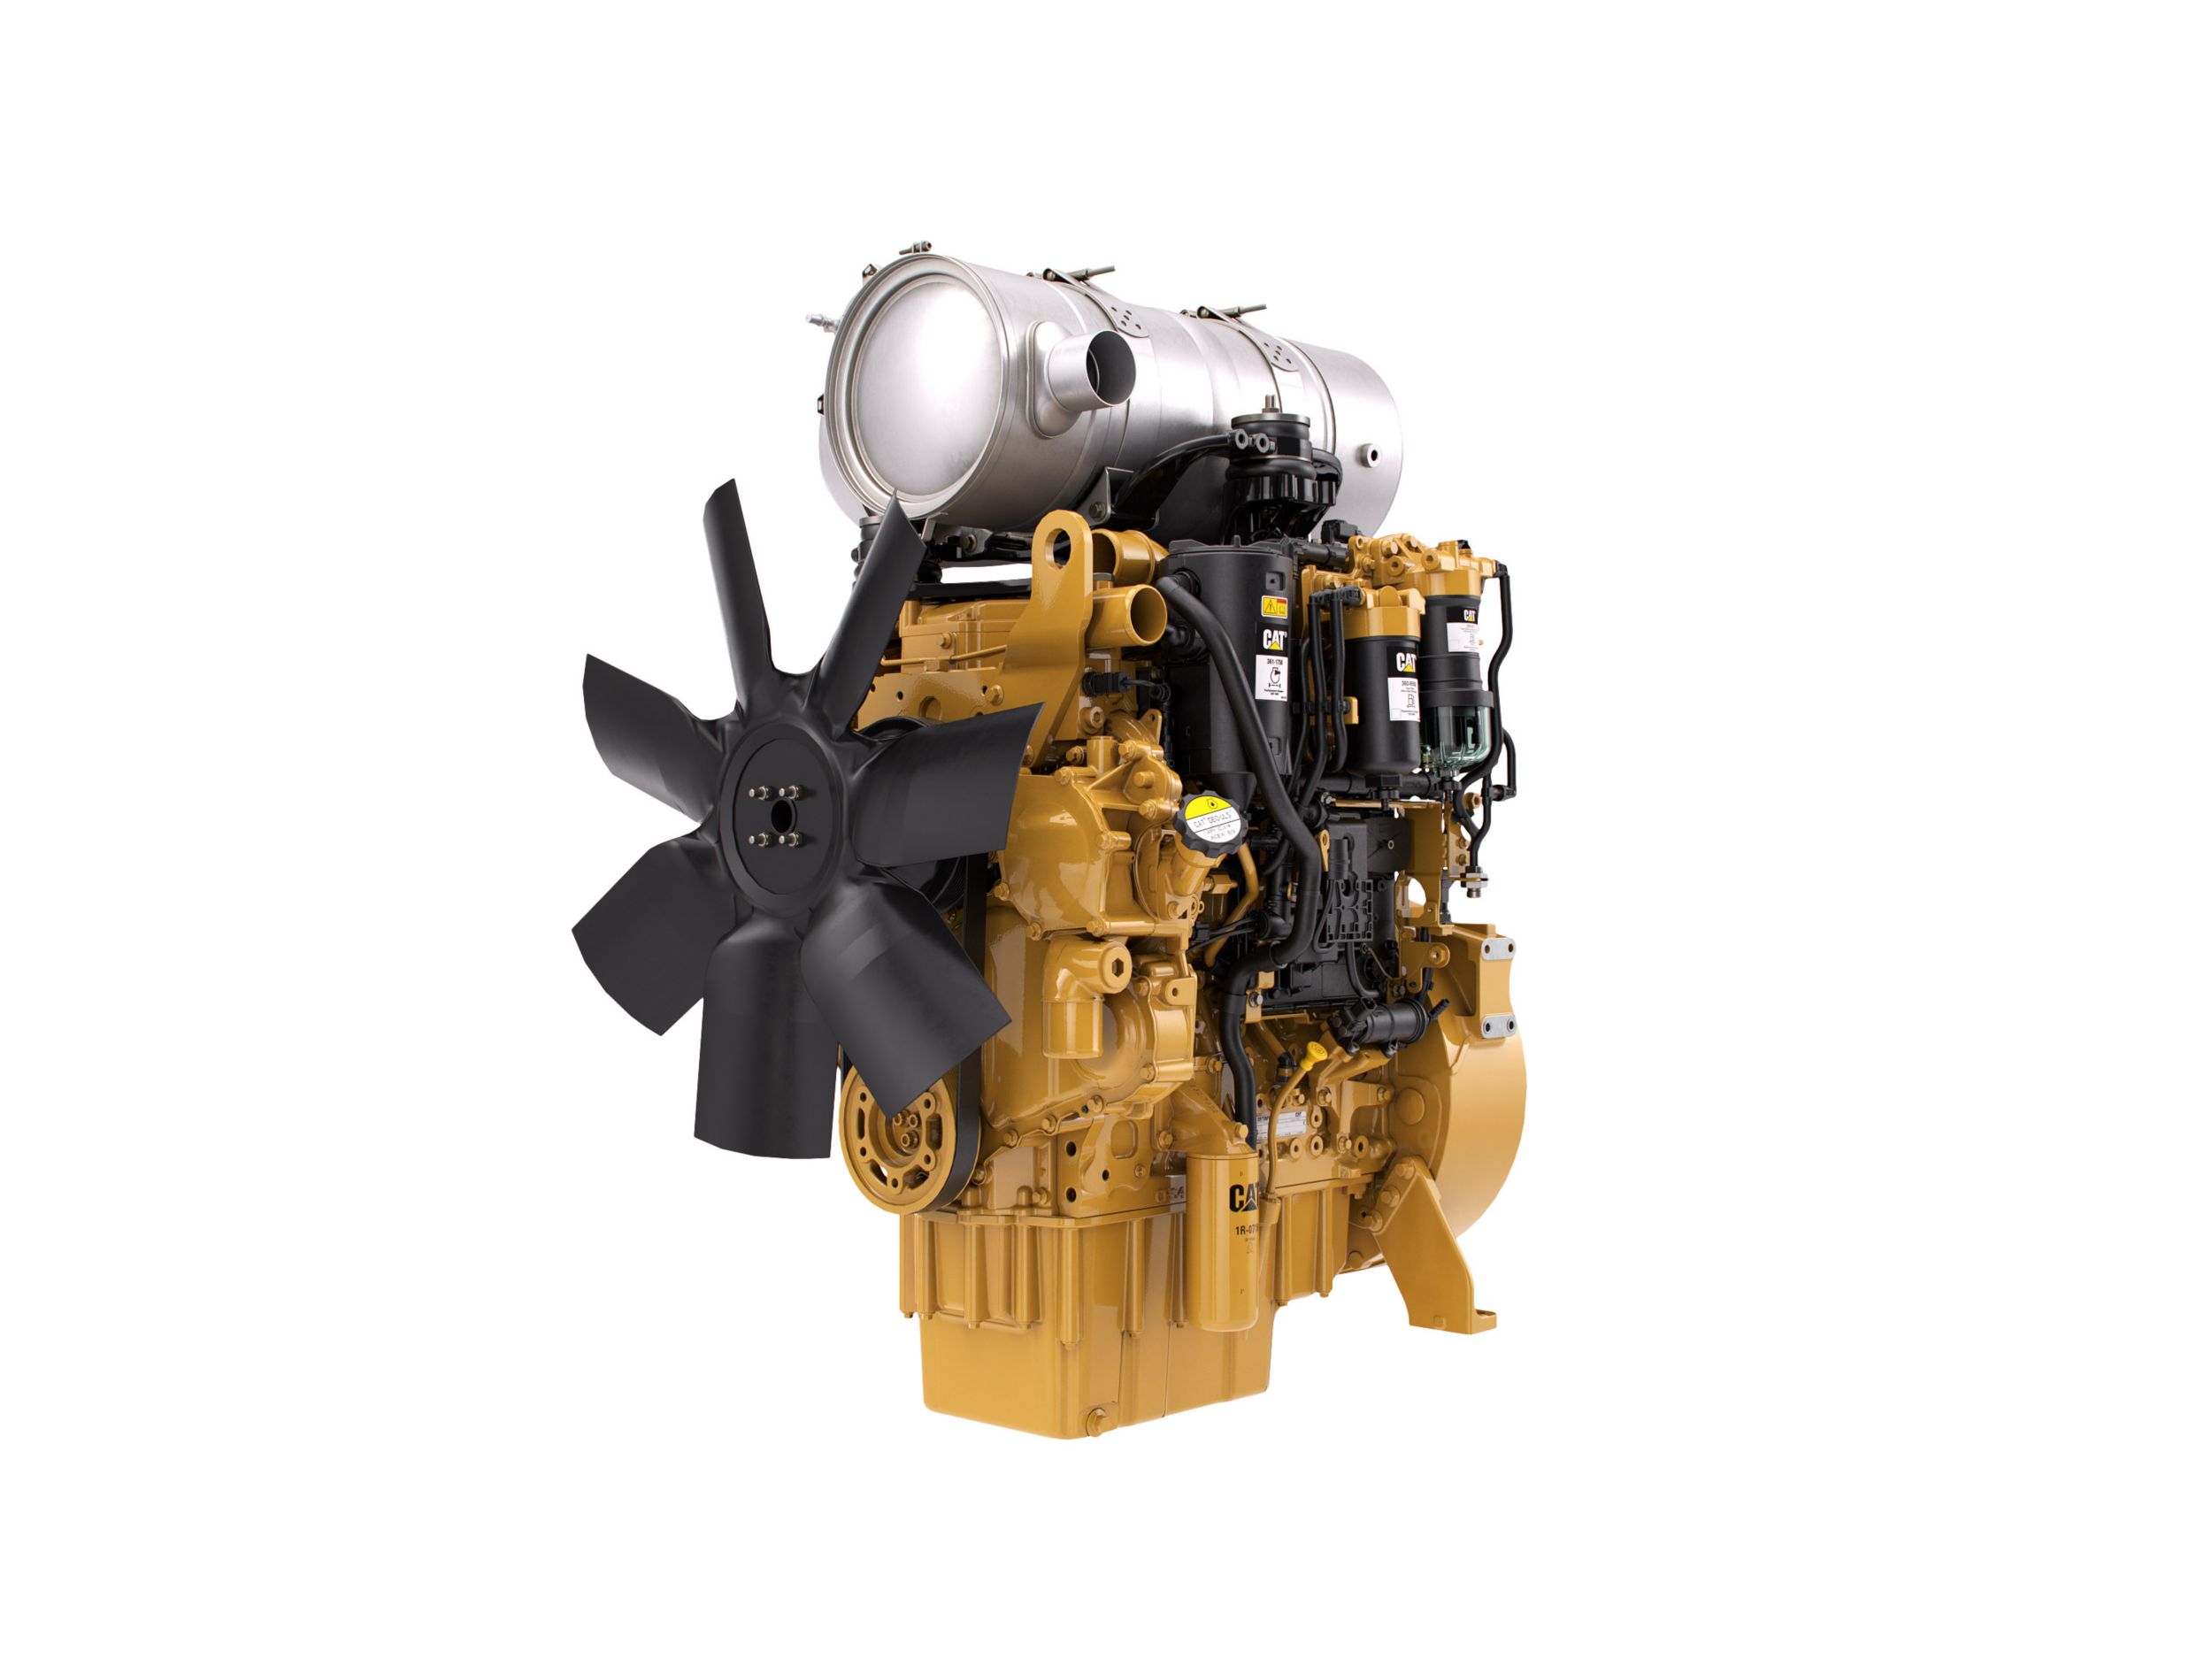 Motores Diesel C4.4 Tier 4 - Altamente Regulamentado